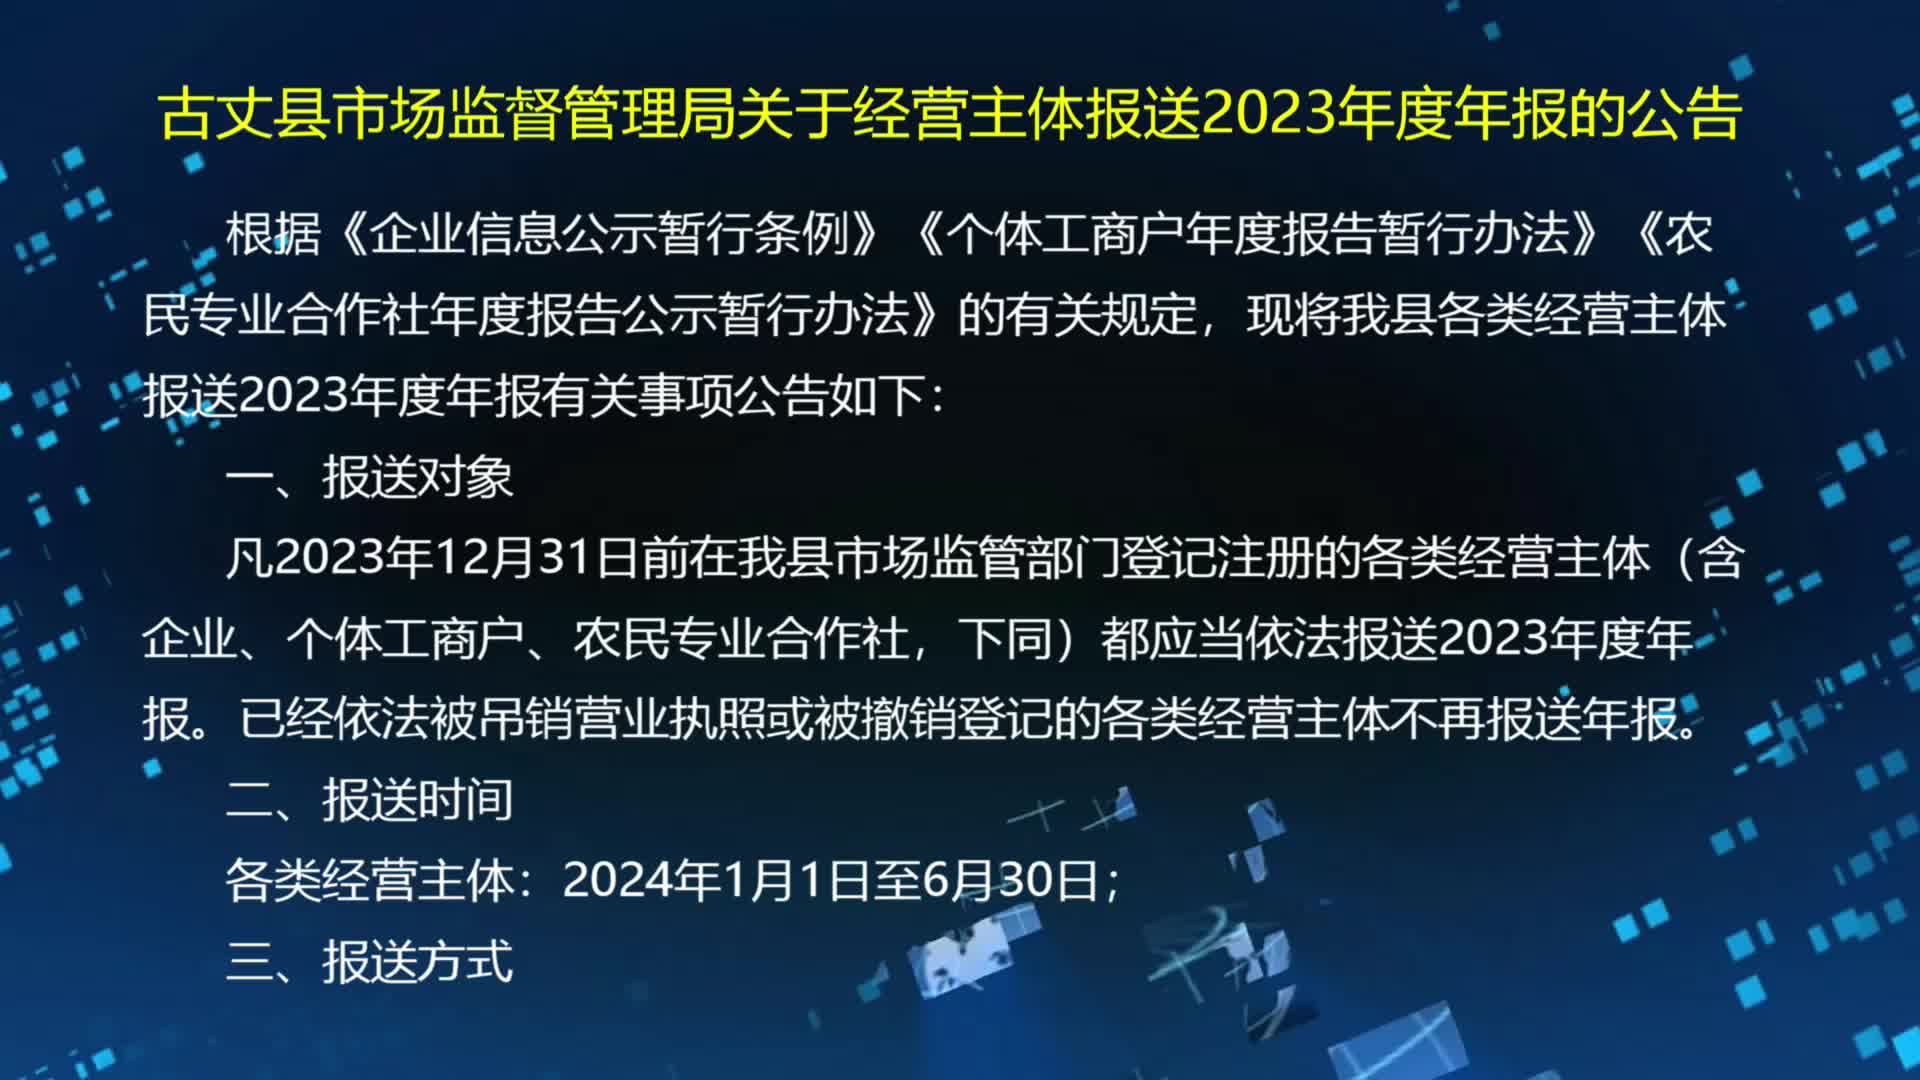 古丈县市场监督管理局关于经营主体报送2023年度年报的公告